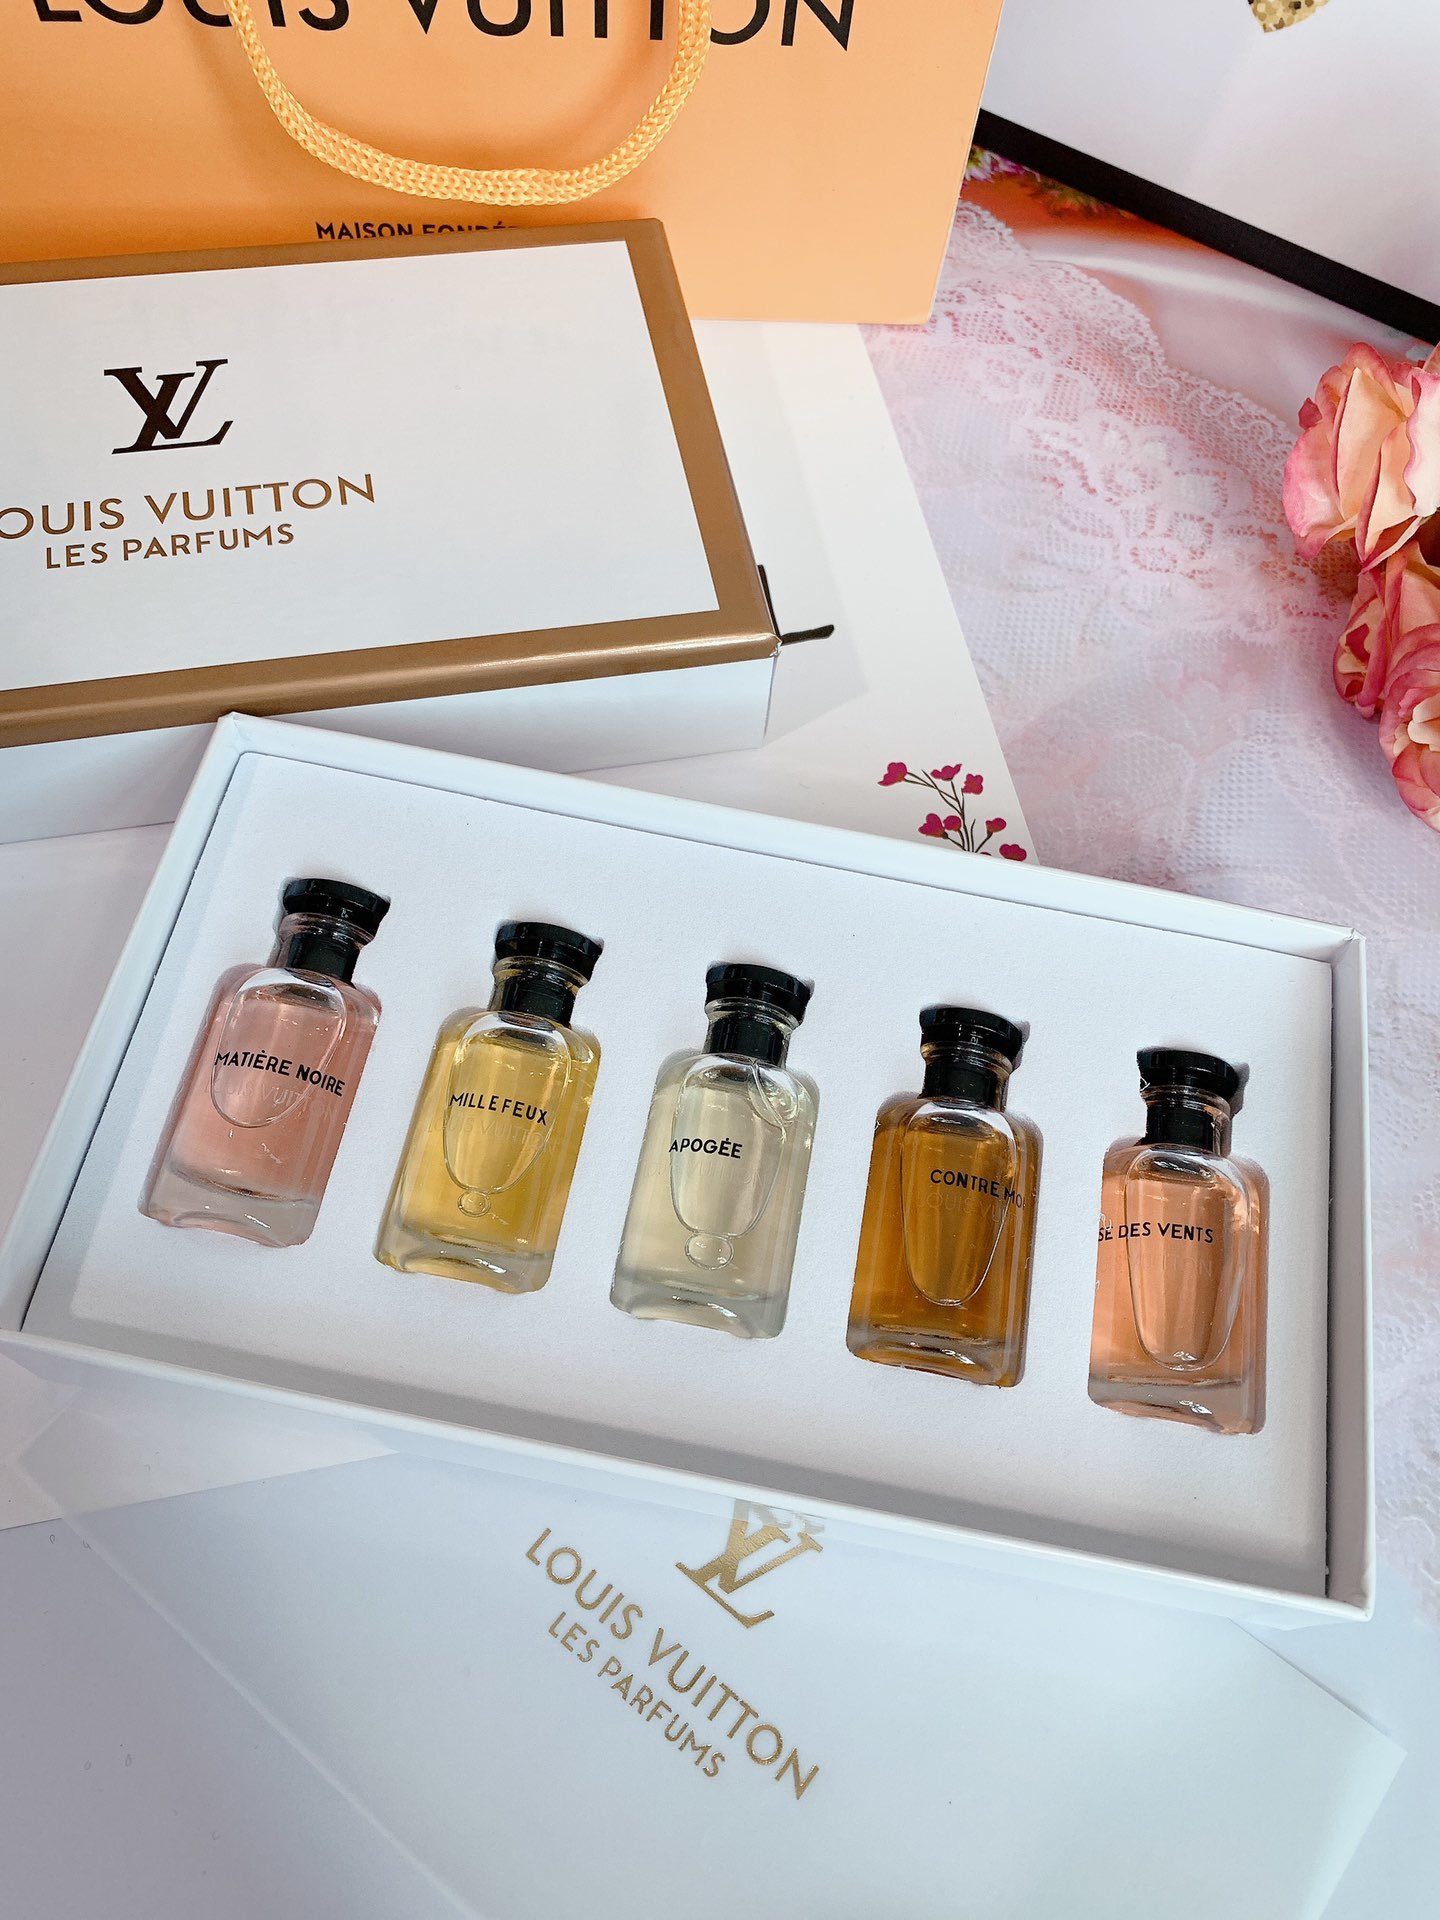 潮牌香水】Lou s Vuitton LV香水五件套高端大气包含5种稀有香水_潮牌 